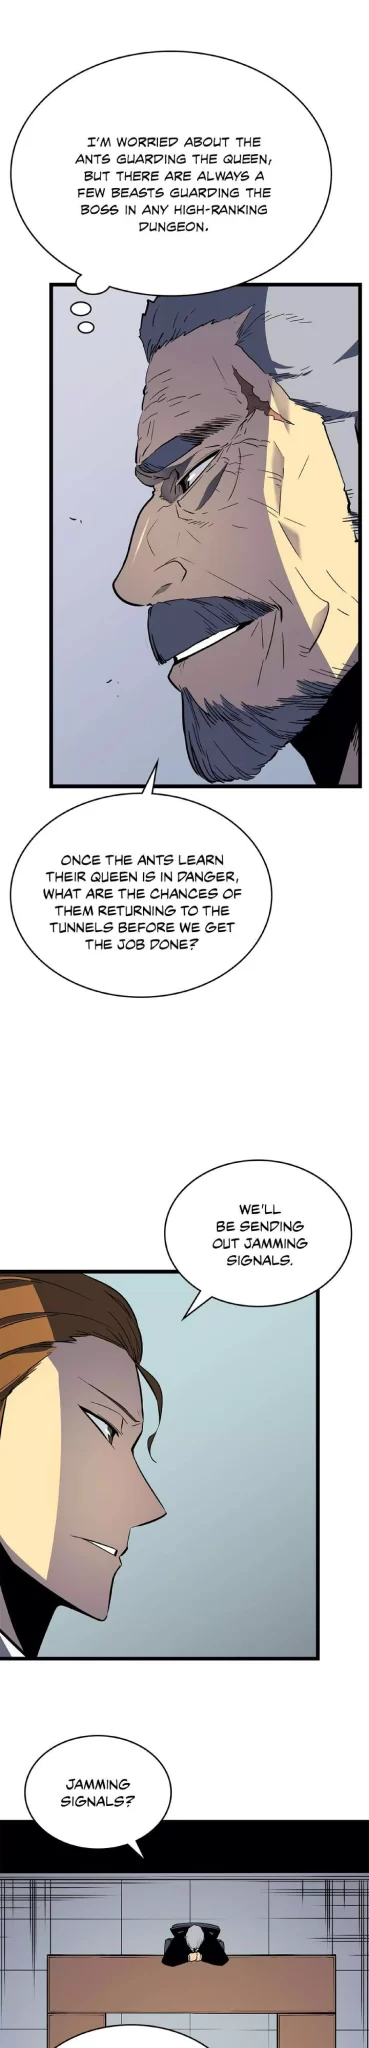 Solo Leveling Manga Manga Chapter - 88 - image 22